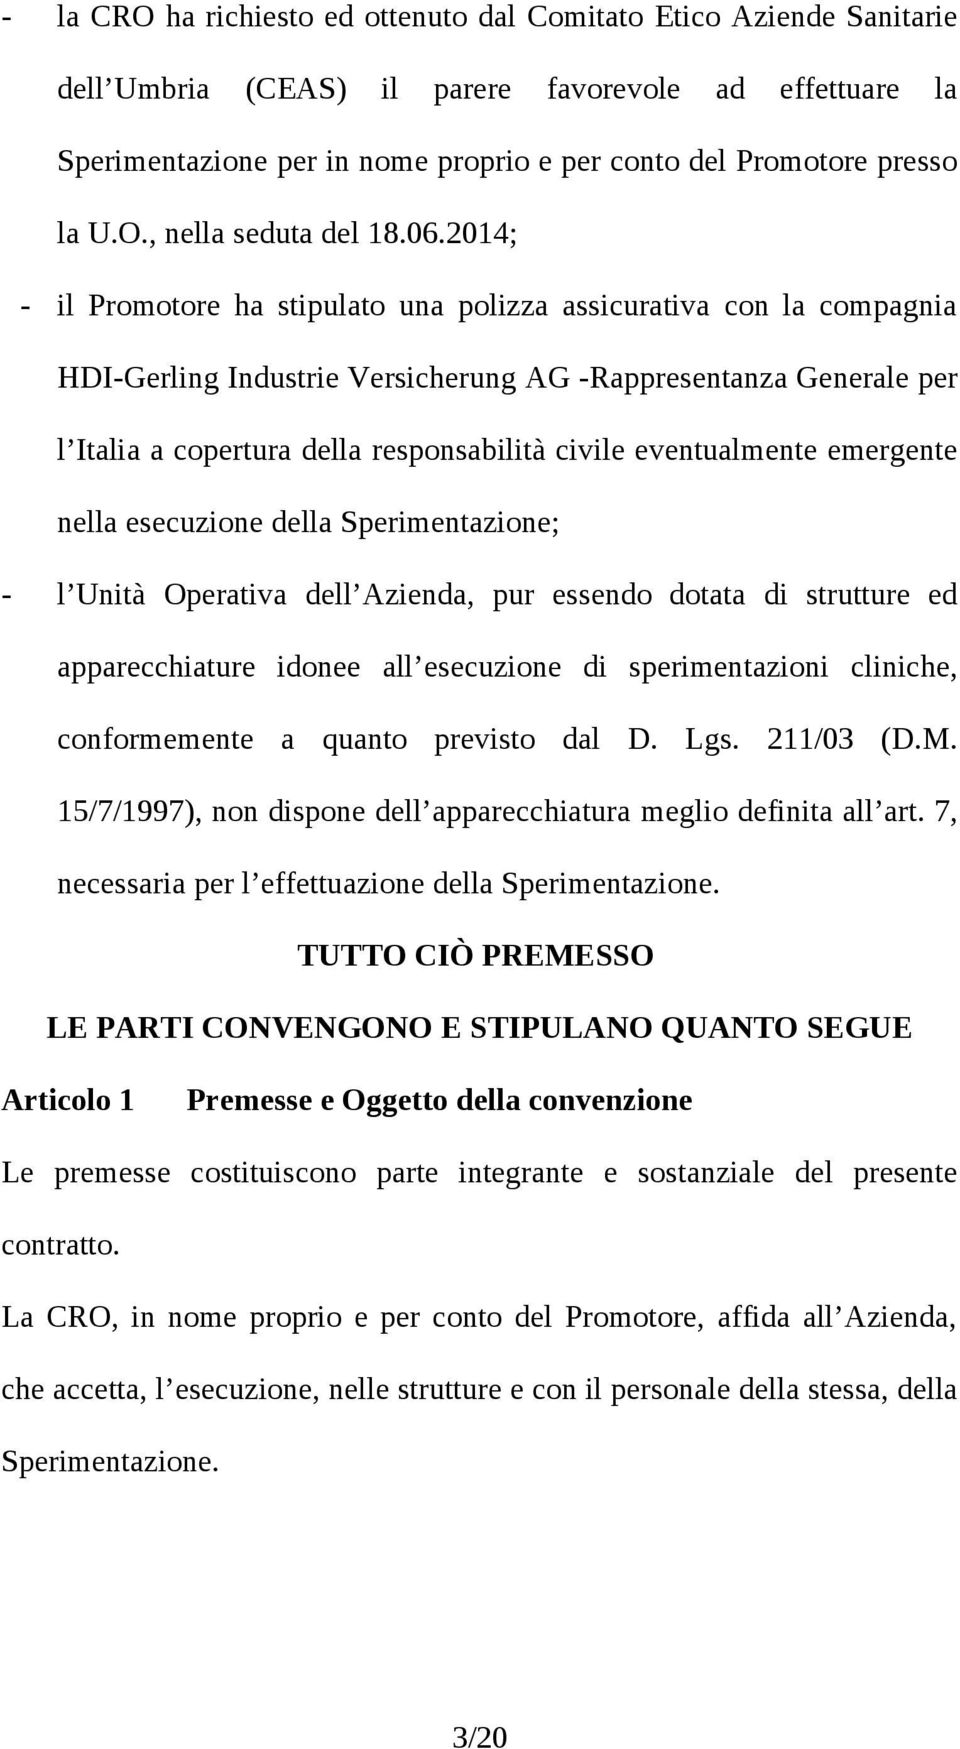 2014; - il Promotore ha stipulato una polizza assicurativa con la compagnia HDI-Gerling Industrie Versicherung AG -Rappresentanza Generale per l Italia a copertura della responsabilità civile